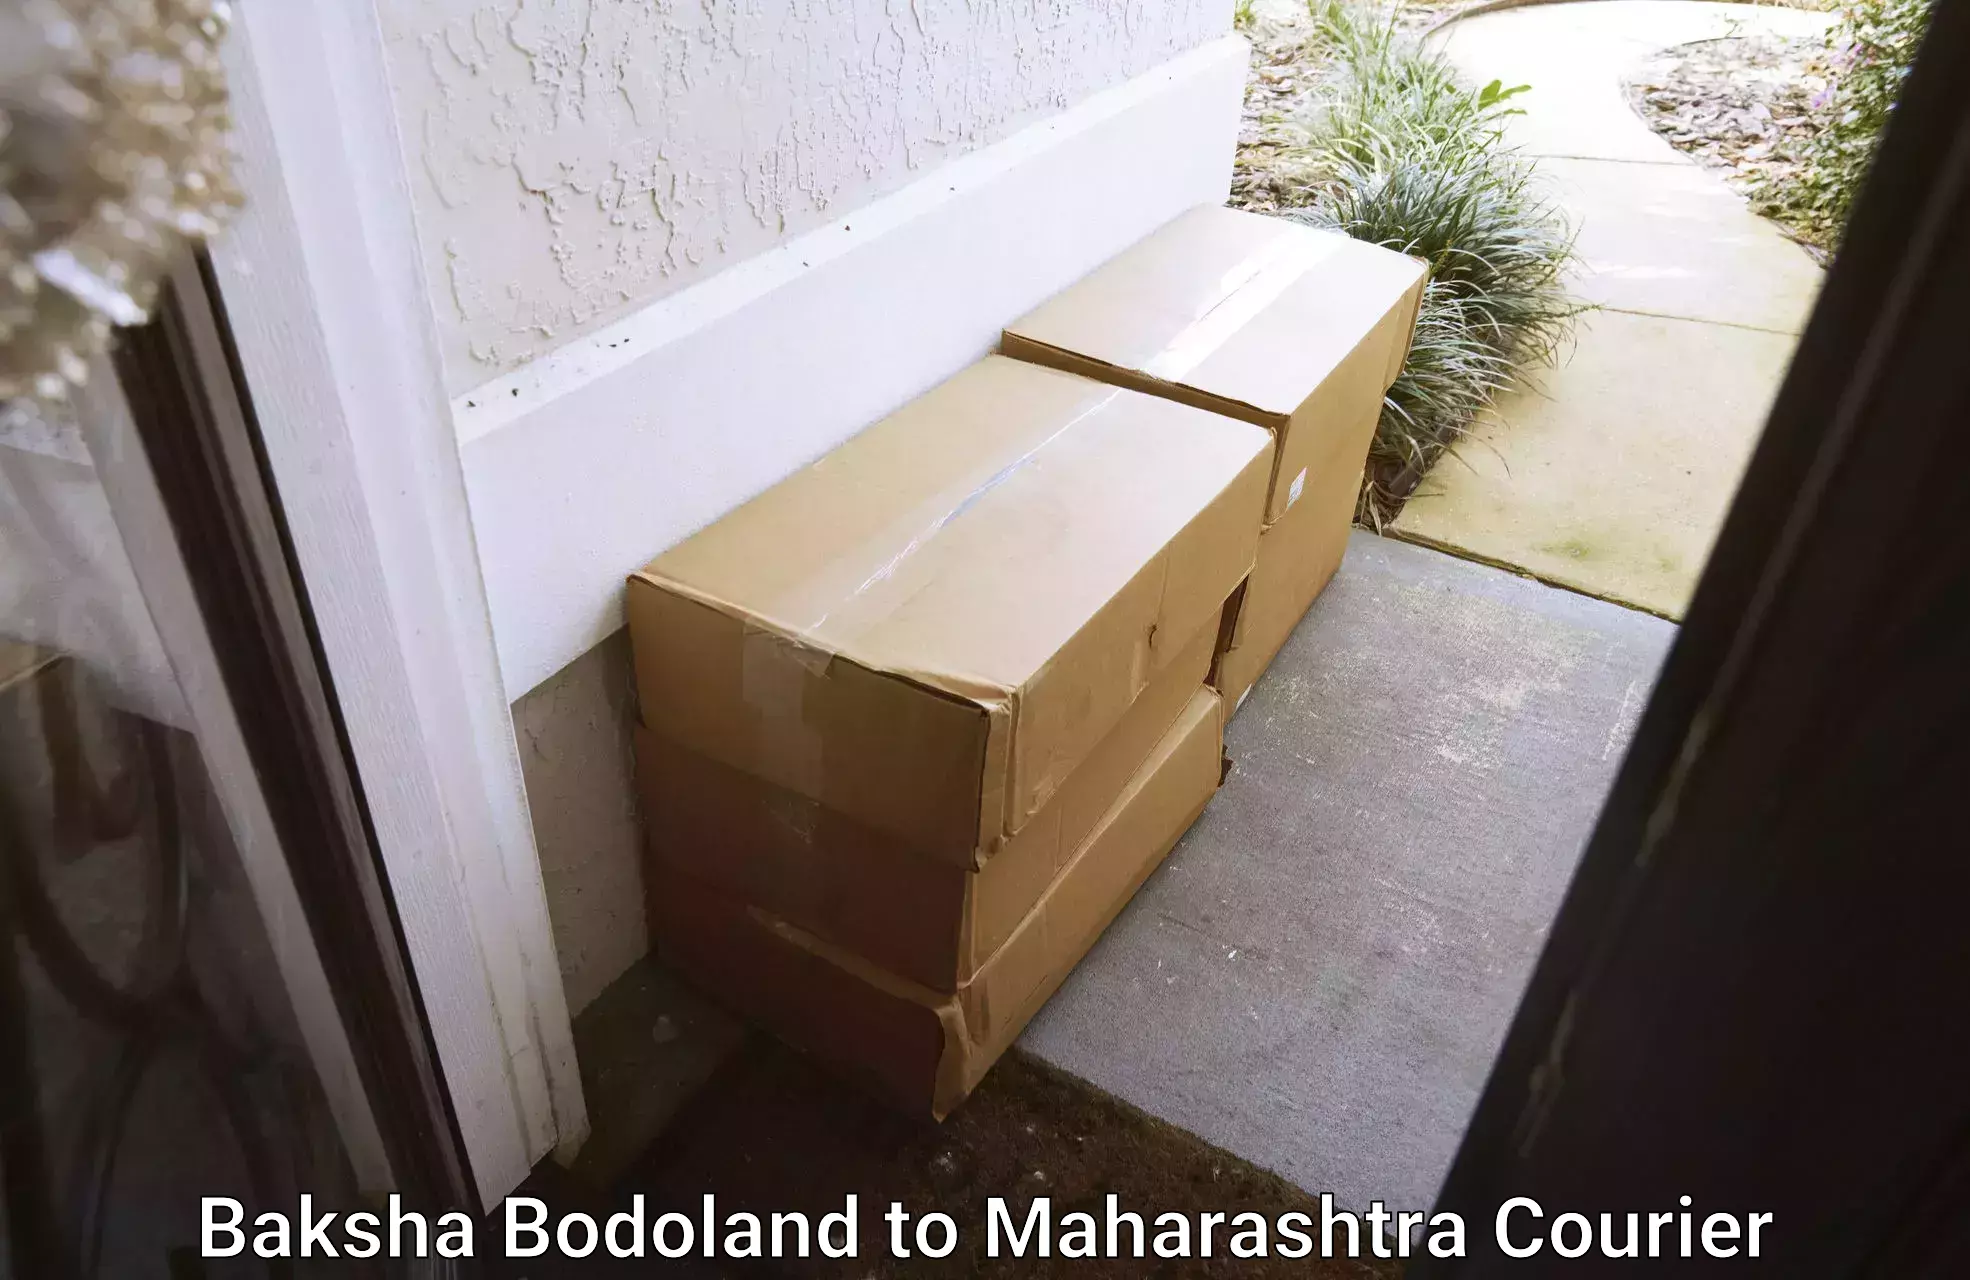 International courier rates Baksha Bodoland to Barshi